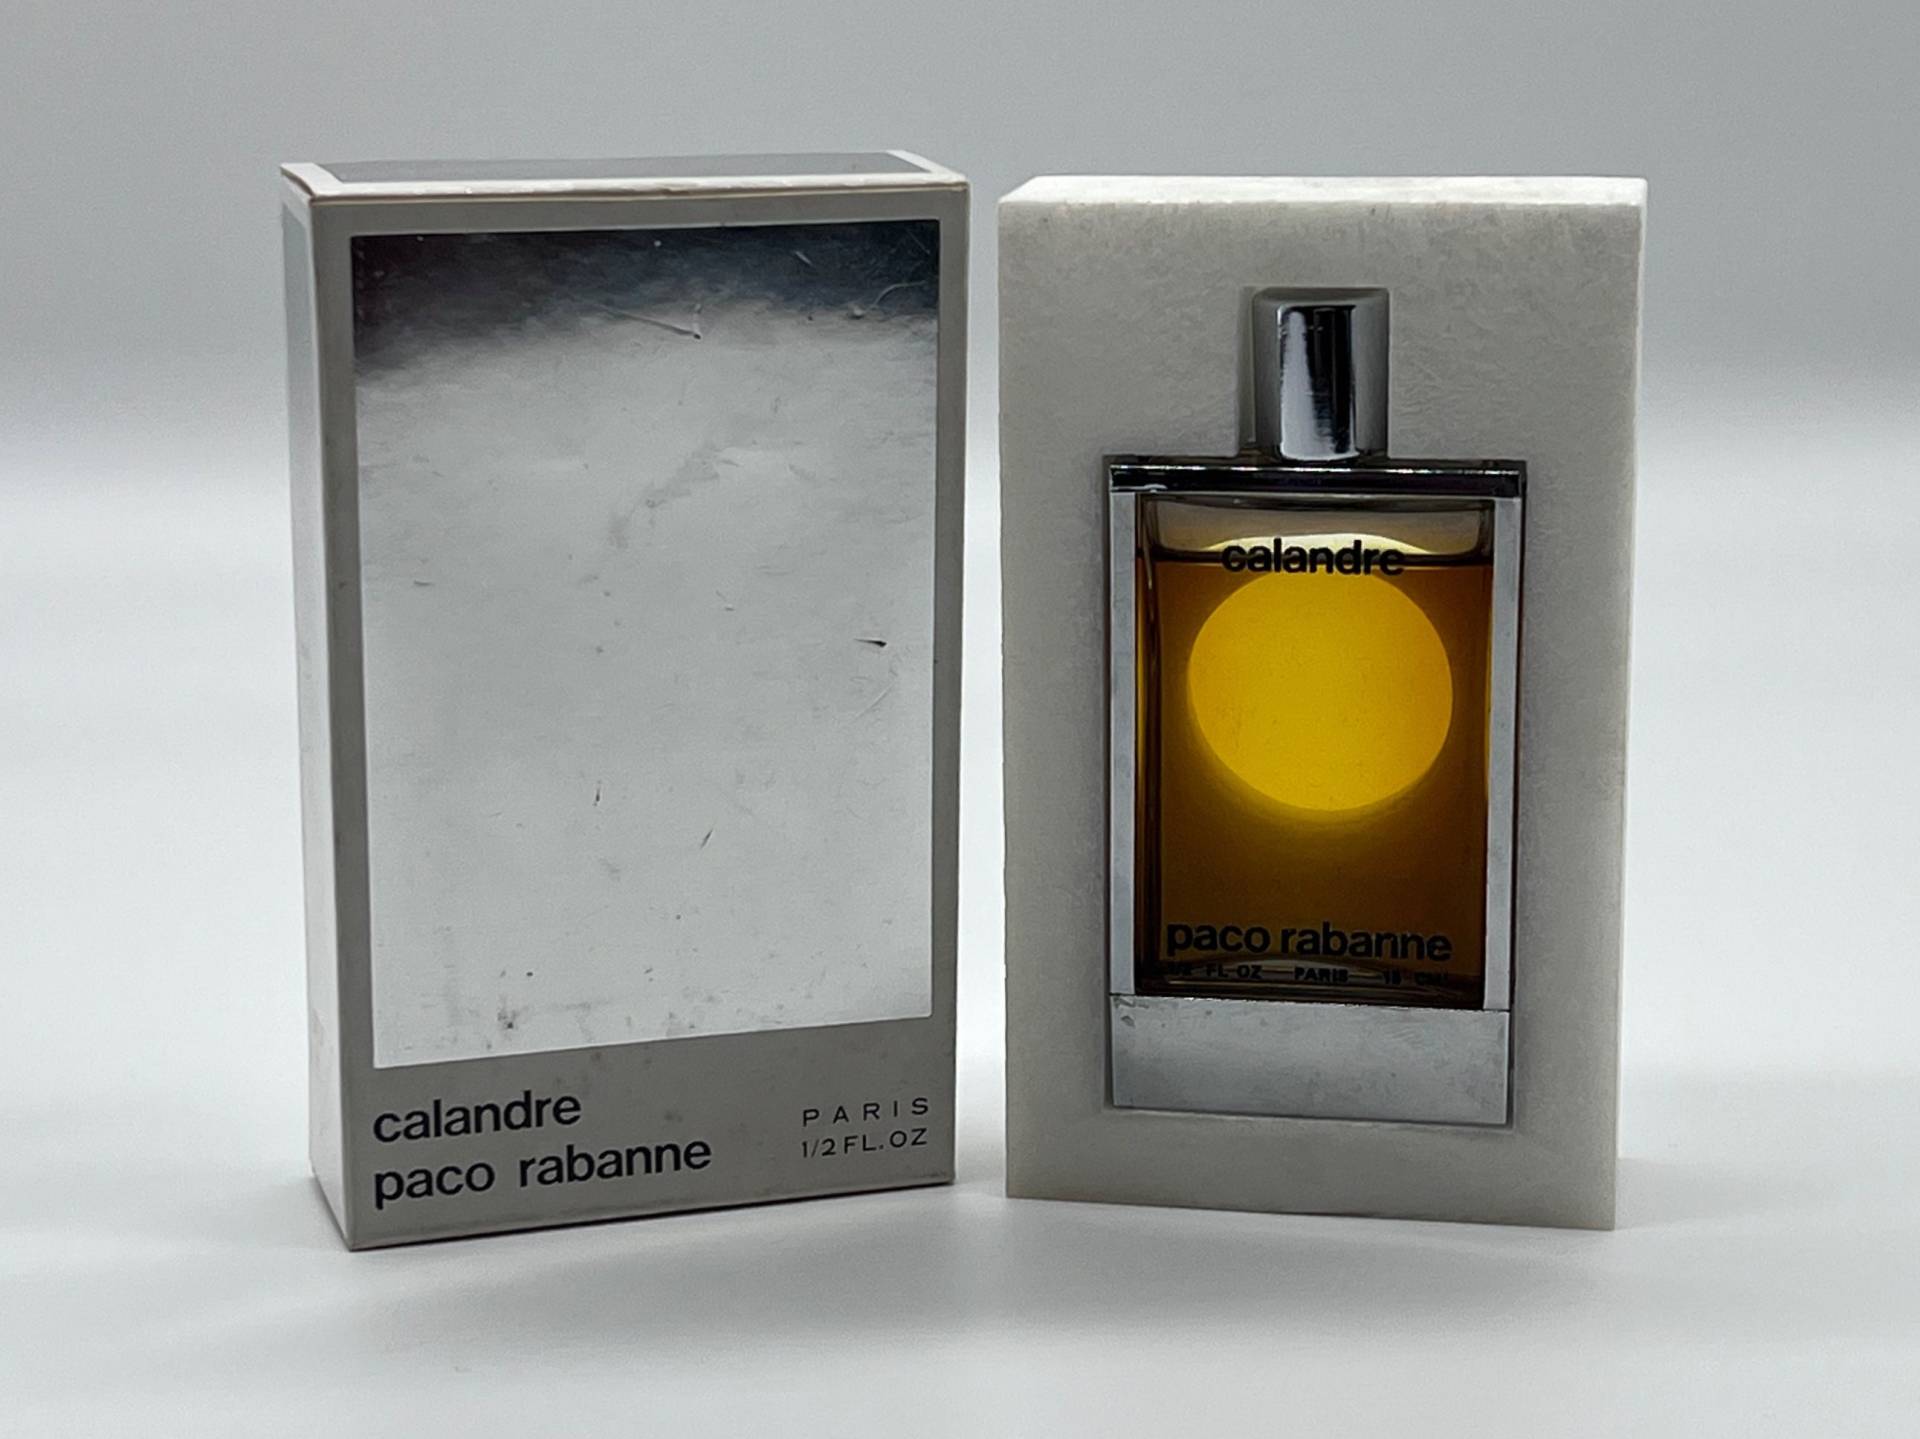 Vintage "Calandre" | 1969 Paco Rabanne Pure Parfum/Extrait 15 Ml/1/2 Us Fl.oz. Splash | No Spray Rare Women Fragrance von Etsy - MyVintageGadgets